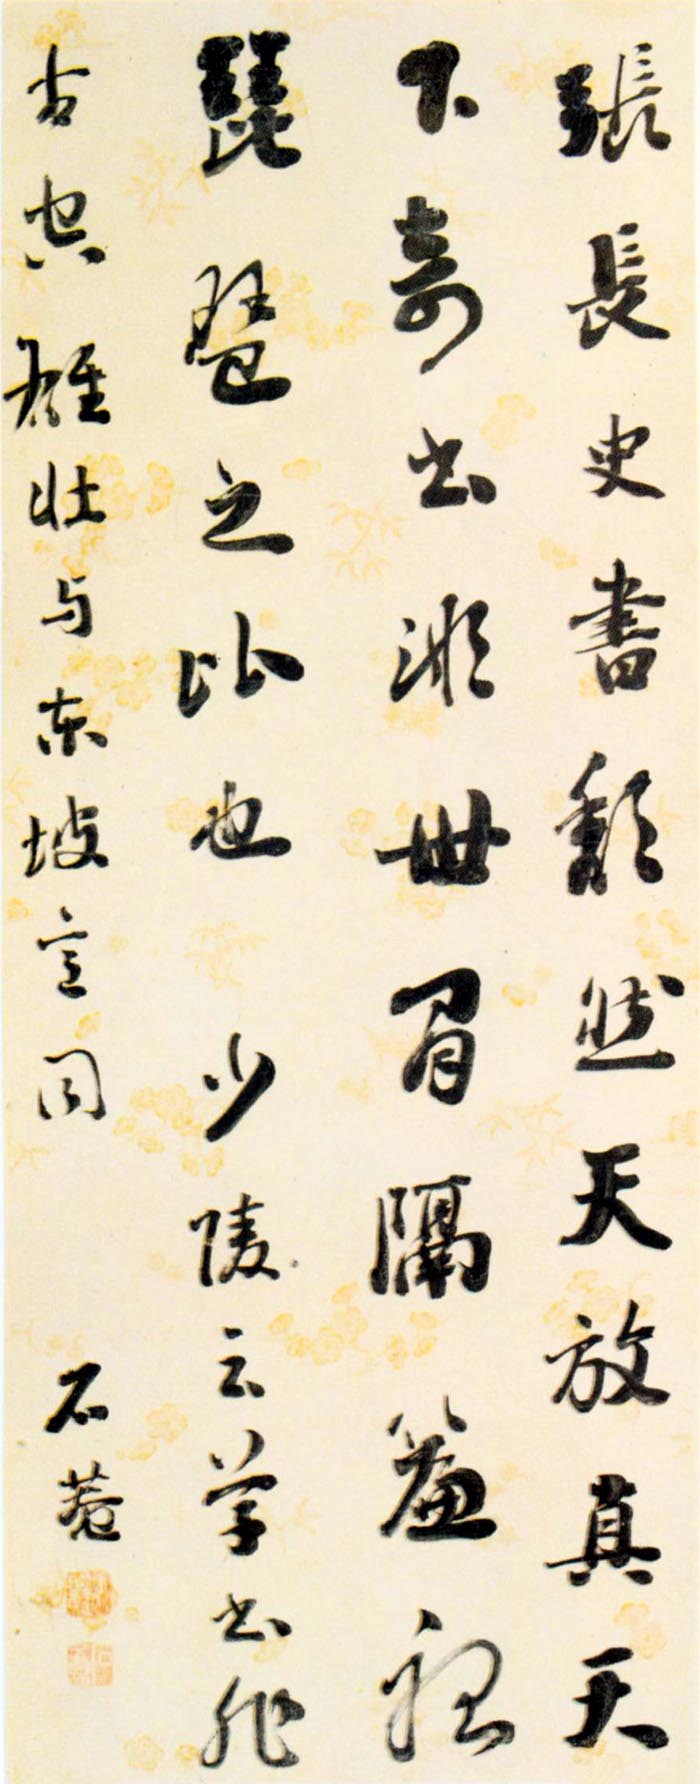 刘墉《行书论书句轴》-北京故宫博物院藏(图1)